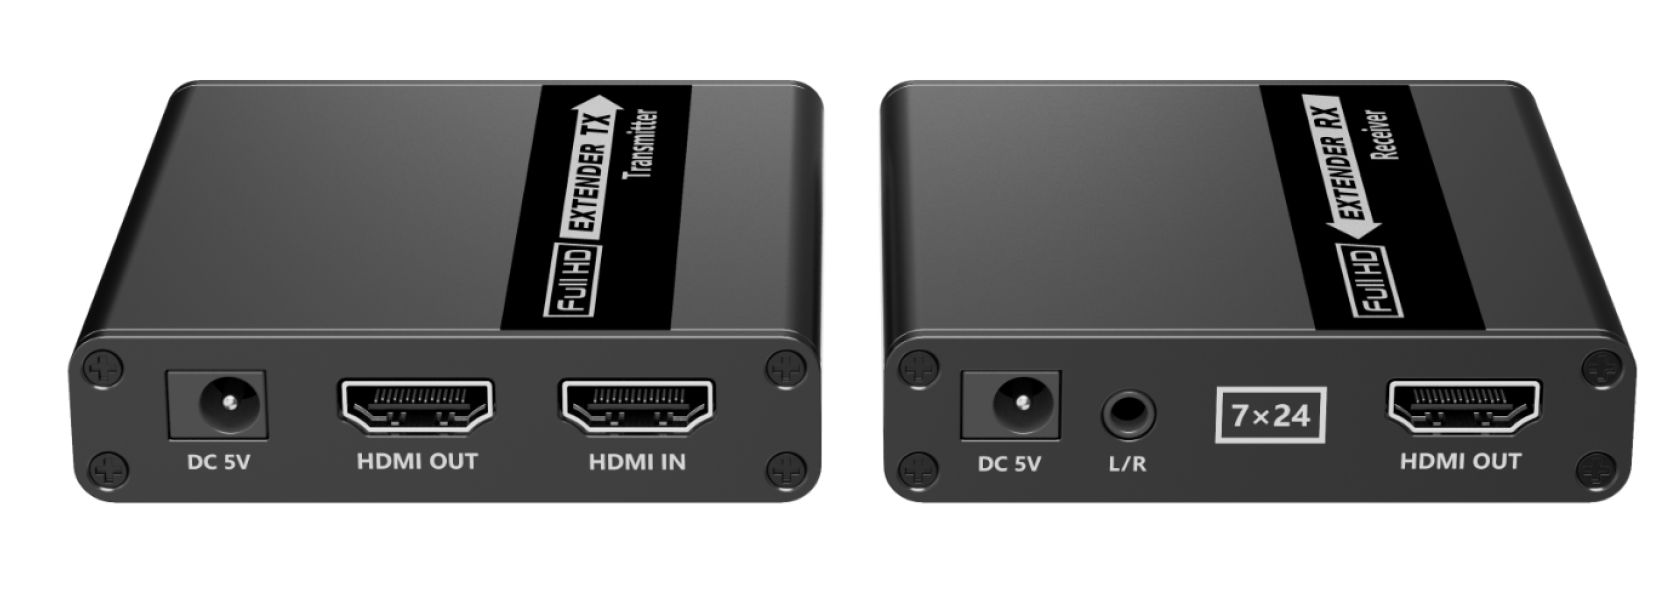 Наши HDMI удлинители передают видеосигнал без задержки